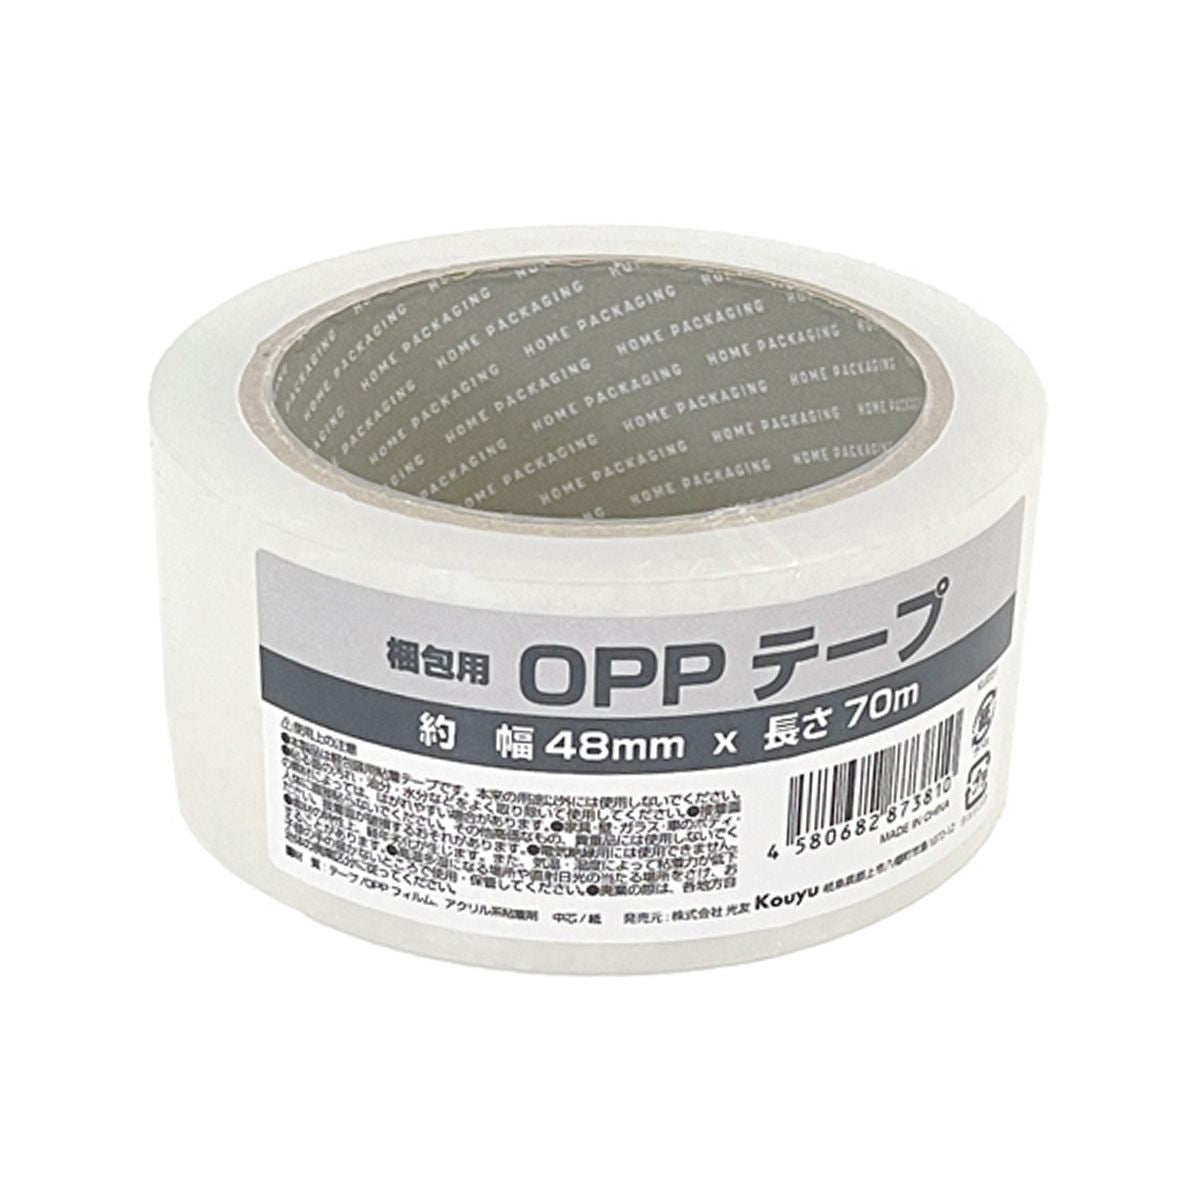 OPPテープ48mmx70m 1523/352946